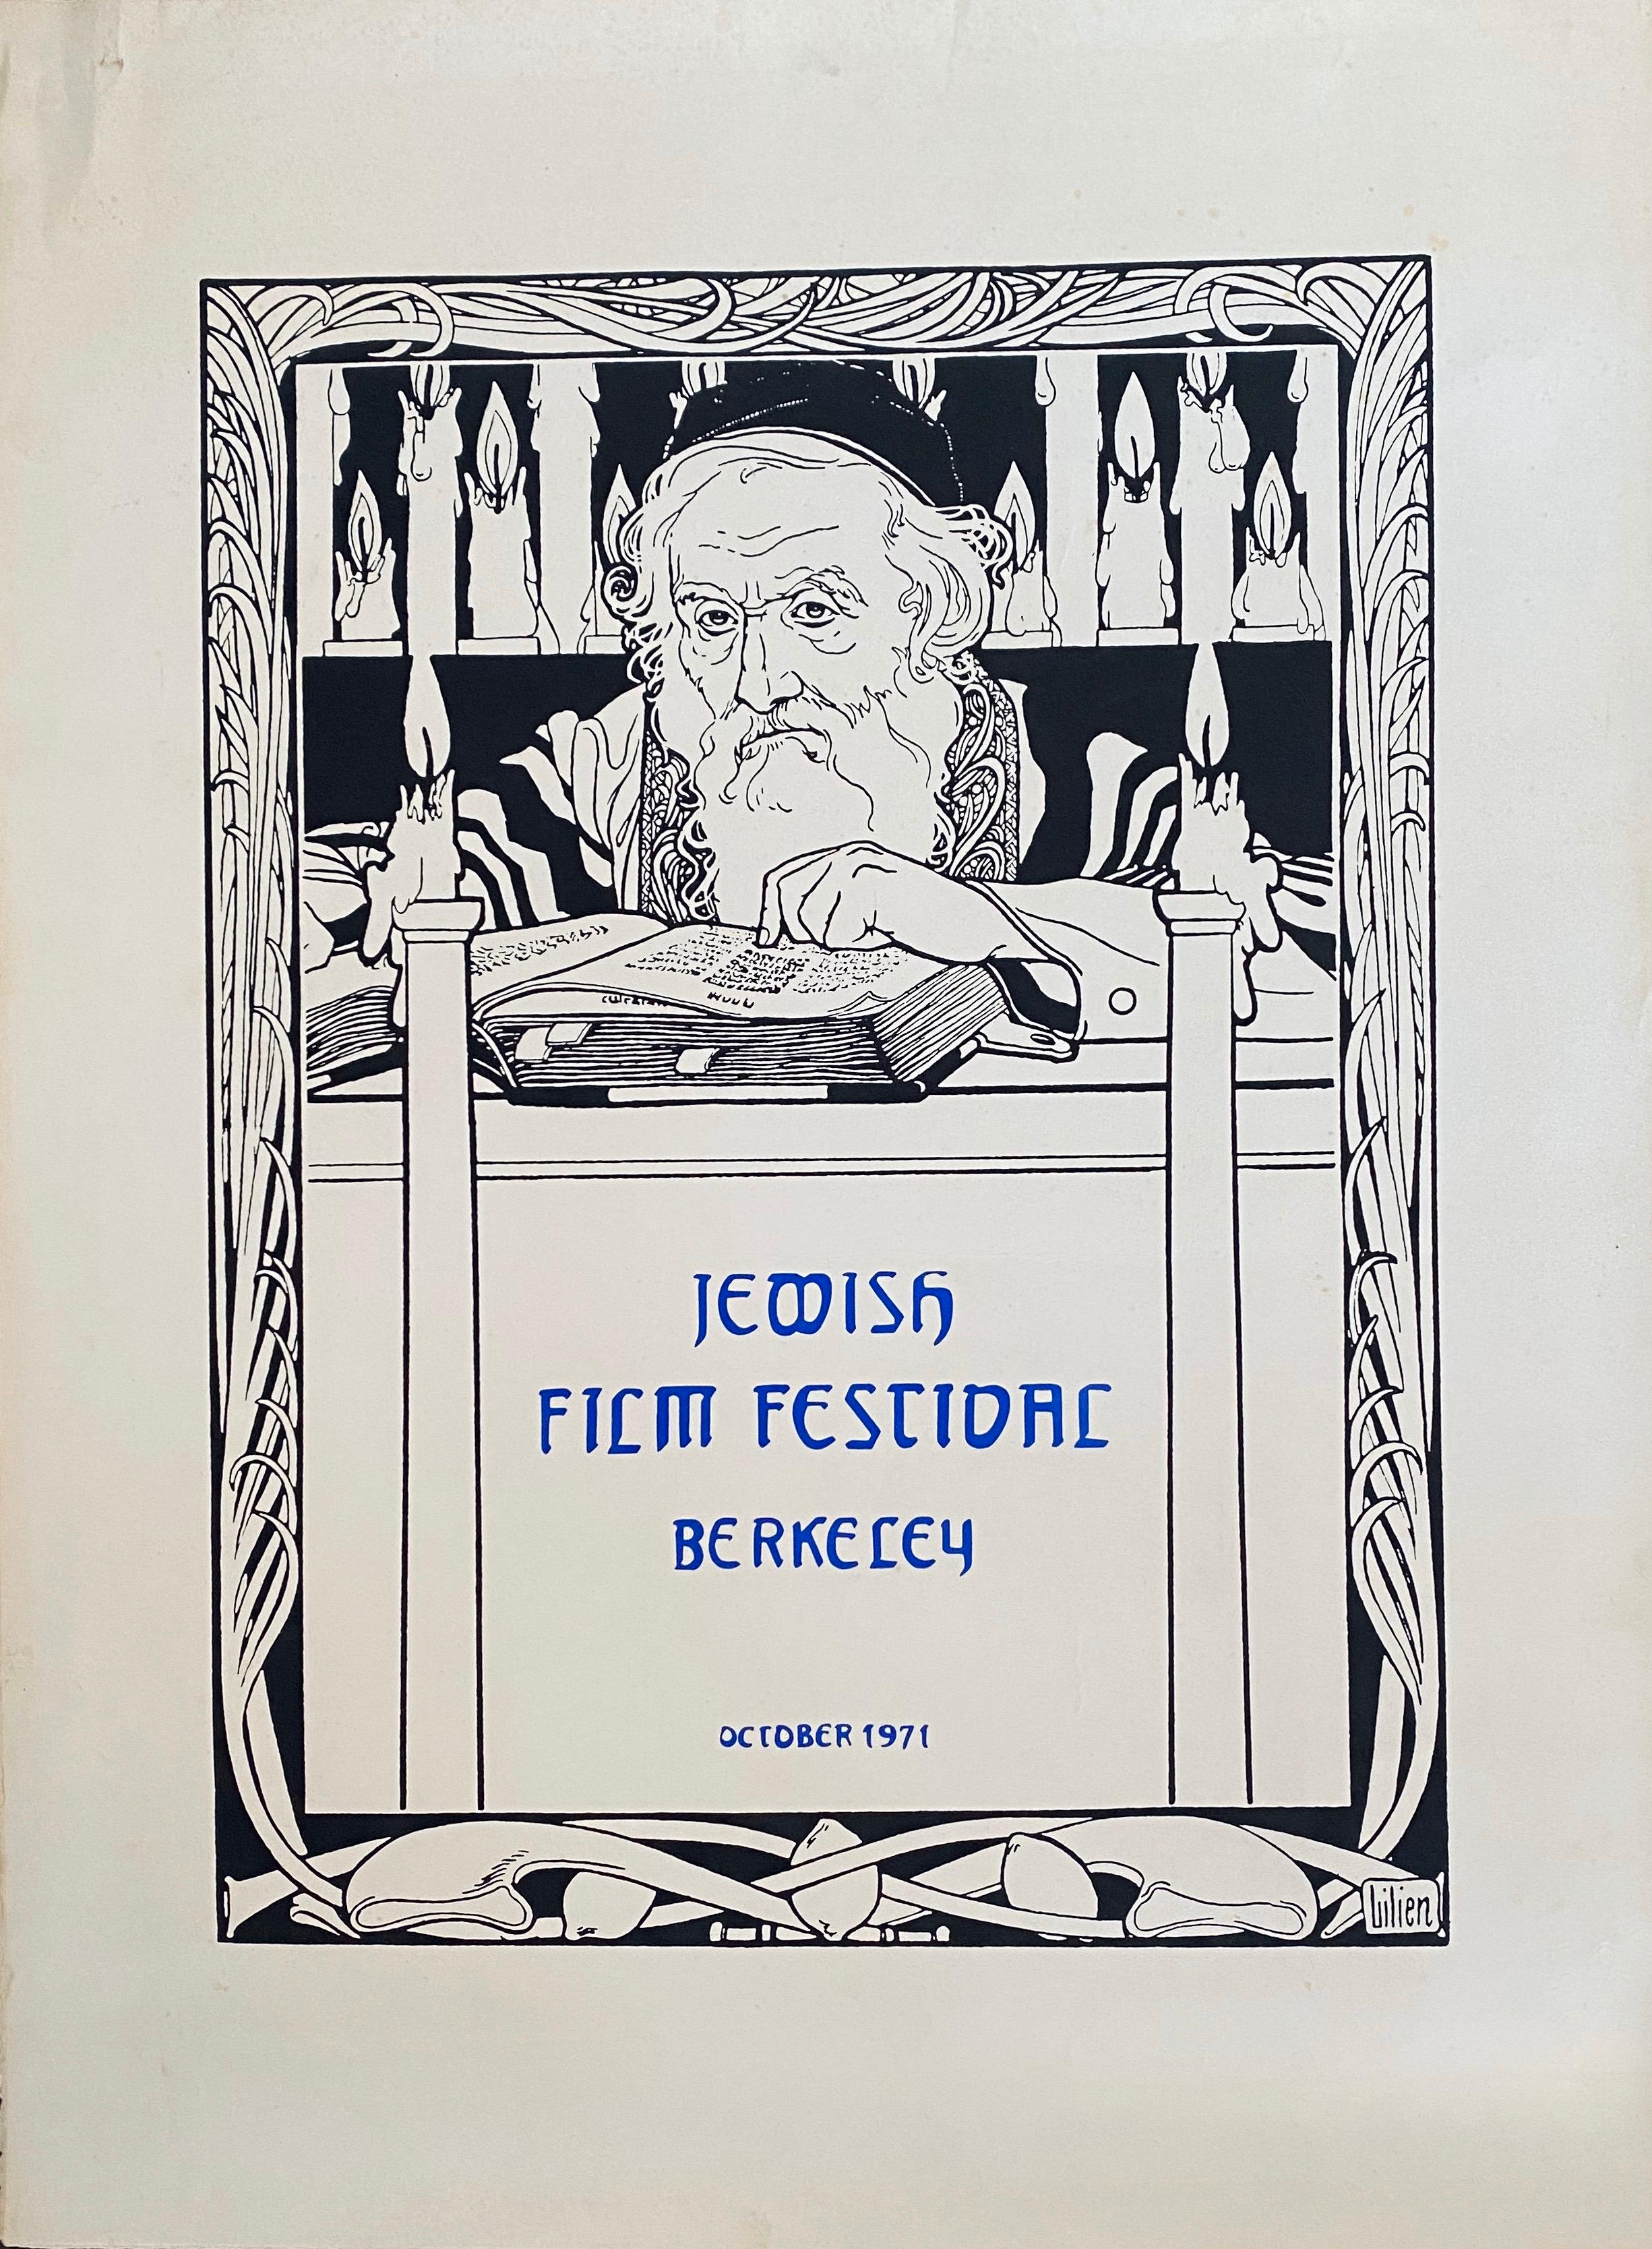 Vintage 1971 Jewish Film Festival Poster Berkeley EM Lilien Art Nouveau Judaica For Sale 2